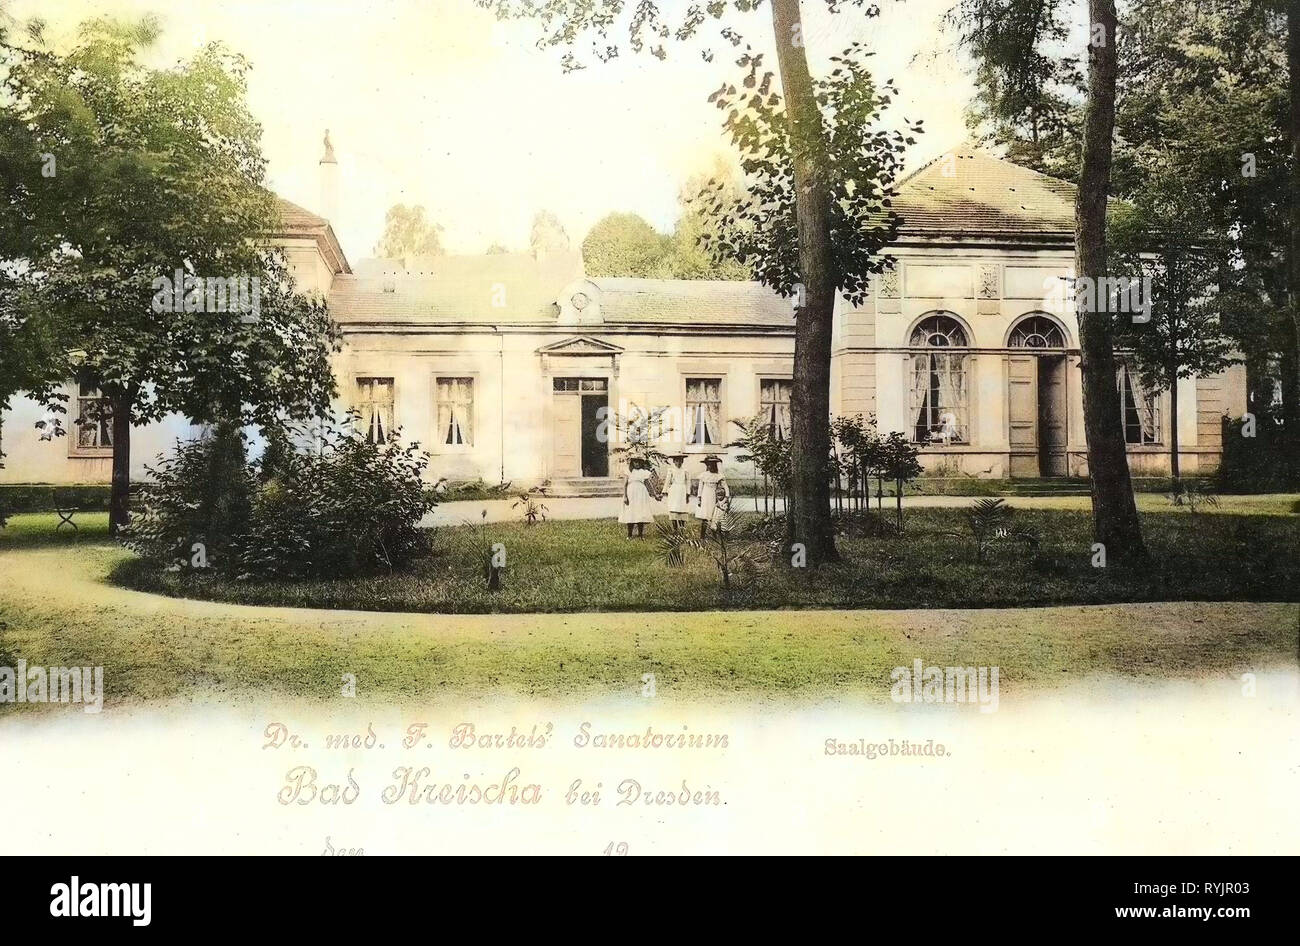 Bâtiments Spa en Saxe, Kreischa, 1899, Landkreis Sächsische Schweiz-Osterzgebirge, Sanatorium, Saalgebäude, Allemagne Banque D'Images